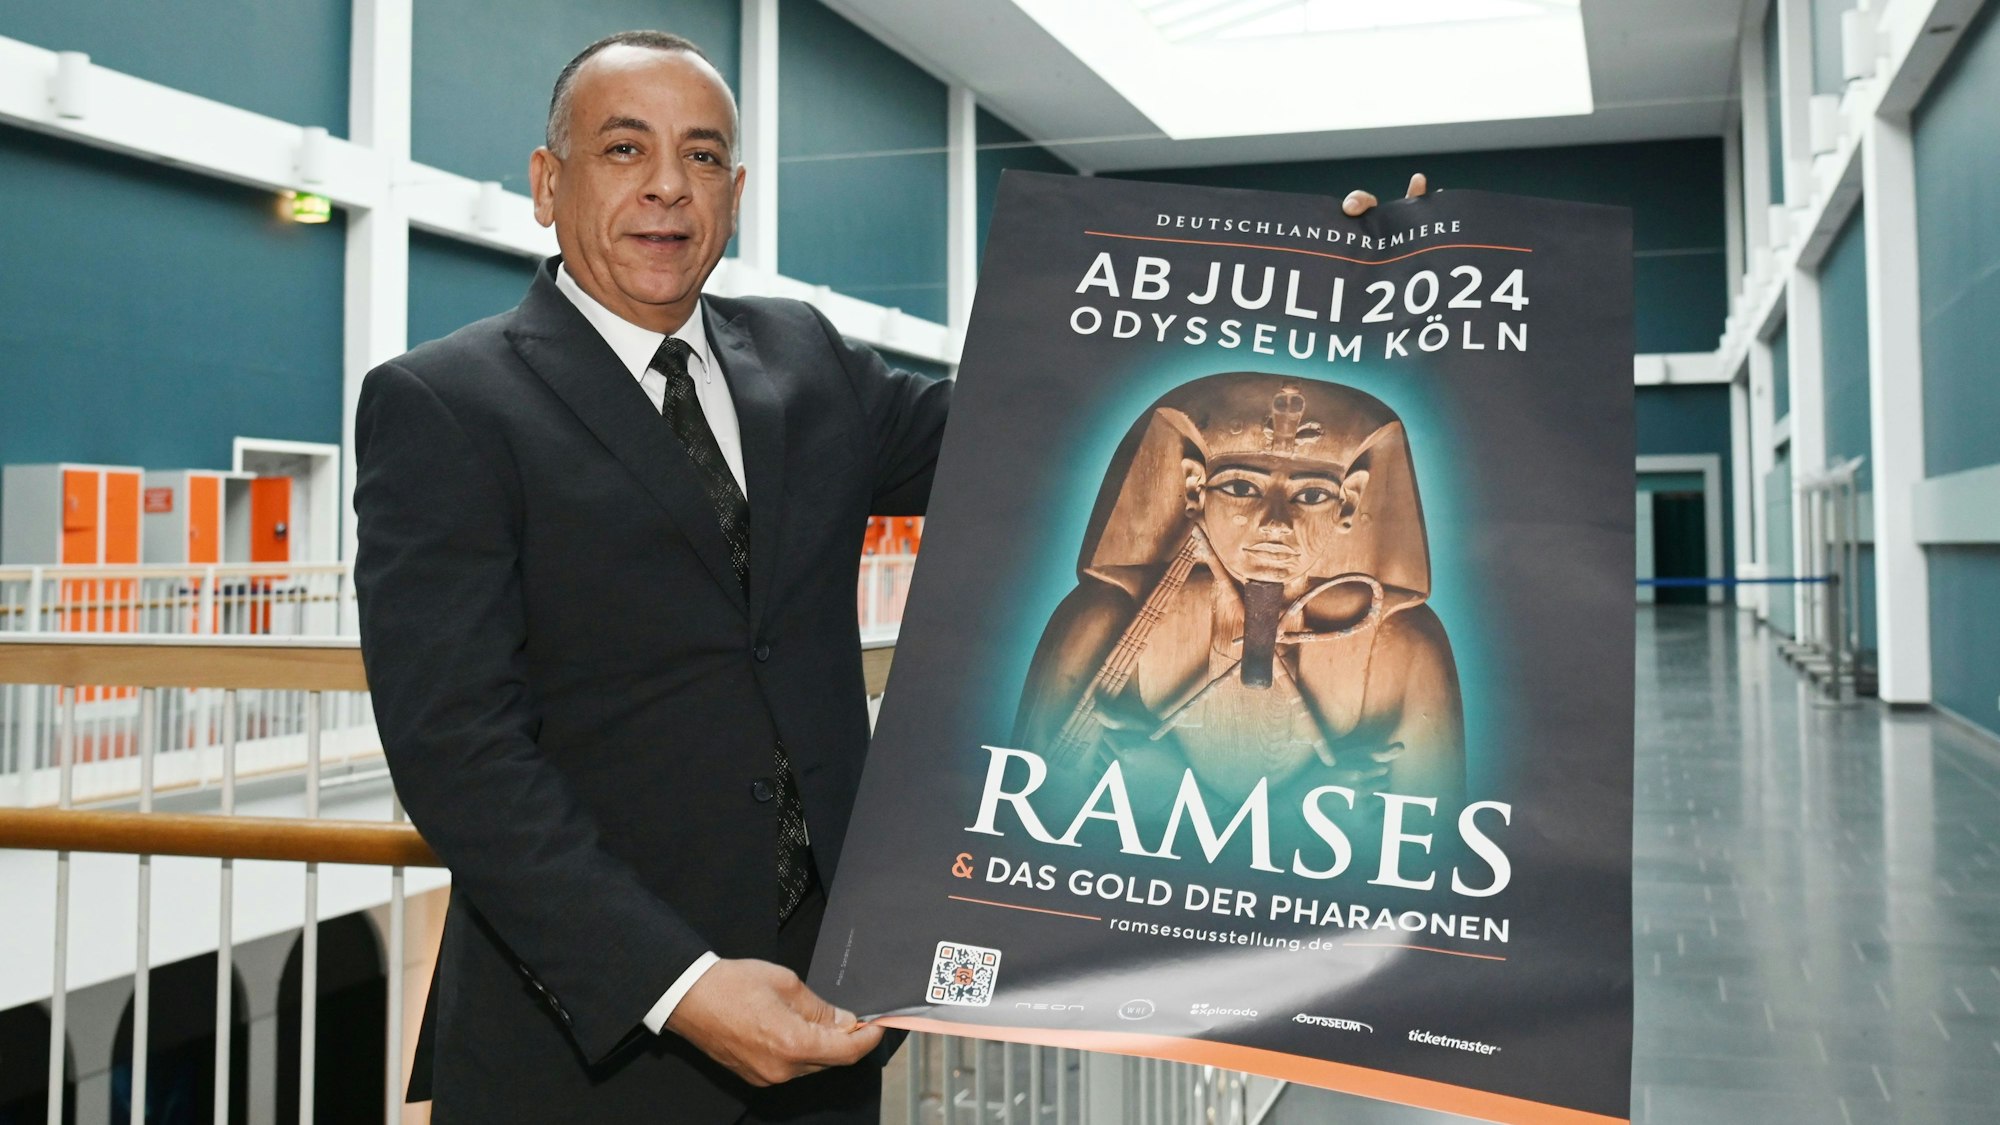 Mostafa Waziri hält in den Gängen des Odysseums Köln ein Plakat der Ausstellung "Ramses & Das Gold der Pharaonen". Die Ausstellung ist ab 13. Juli 2024 zu Gast im Odysseum. Dr. Mostafa Waziri hat sich vor Ort ein Bild gemacht.